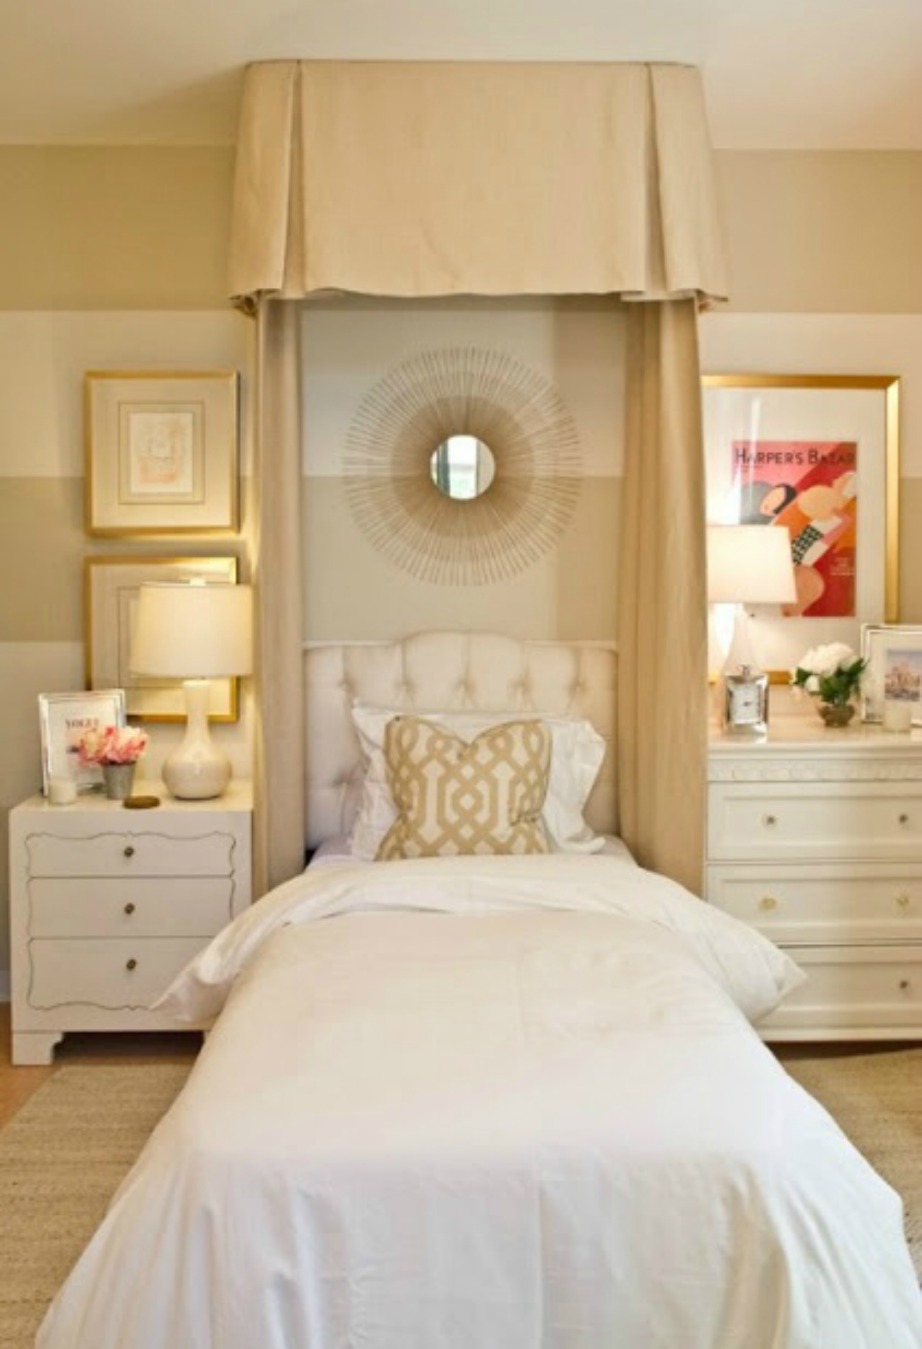 Λευκό, μπεζ και χρυσό είναι τρία χρώματα που ταιριάζουν σε κάθε υπνοδωμάτιο. Επιπλέον δημιουργούν θετική διάθεση και υποστηρίζονται πολύ και από το φενγκ σούι.